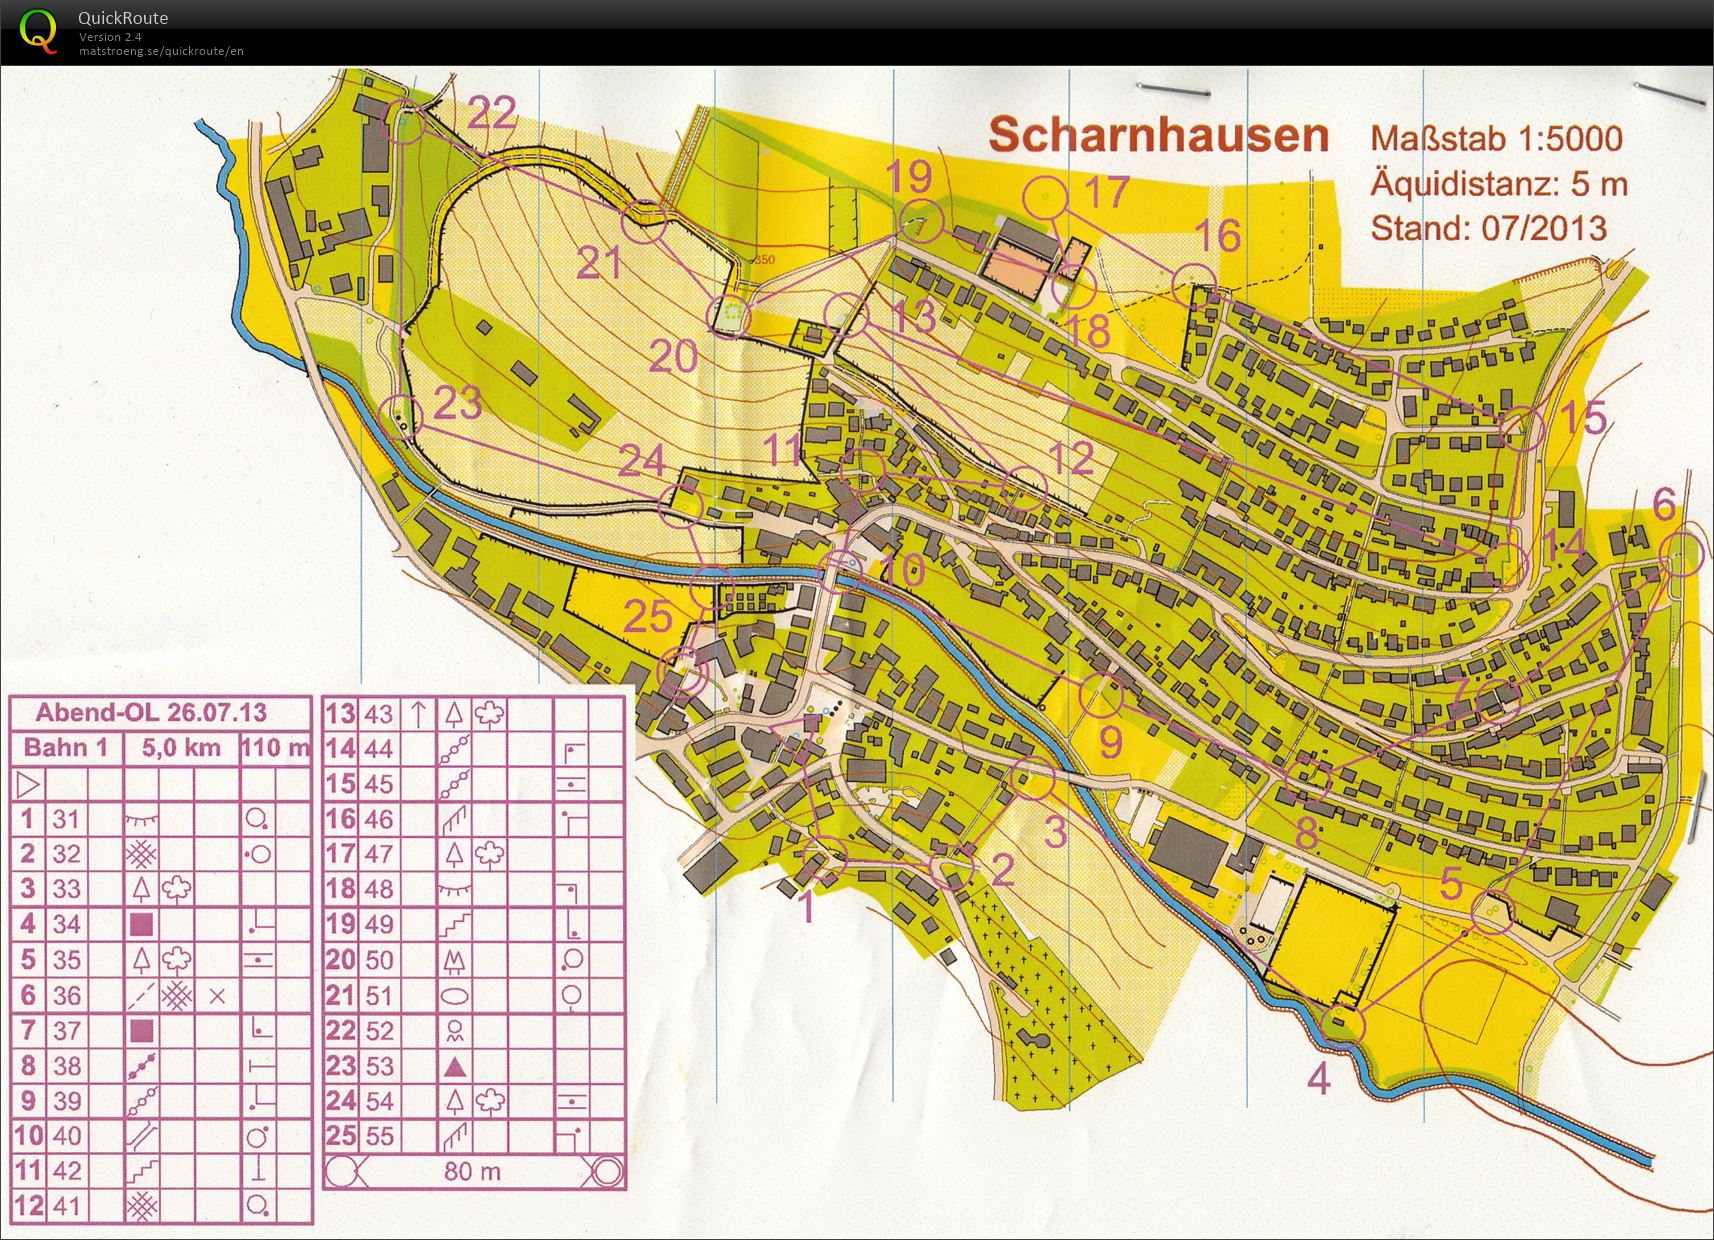 Training Scharnhausen (2013-07-26)